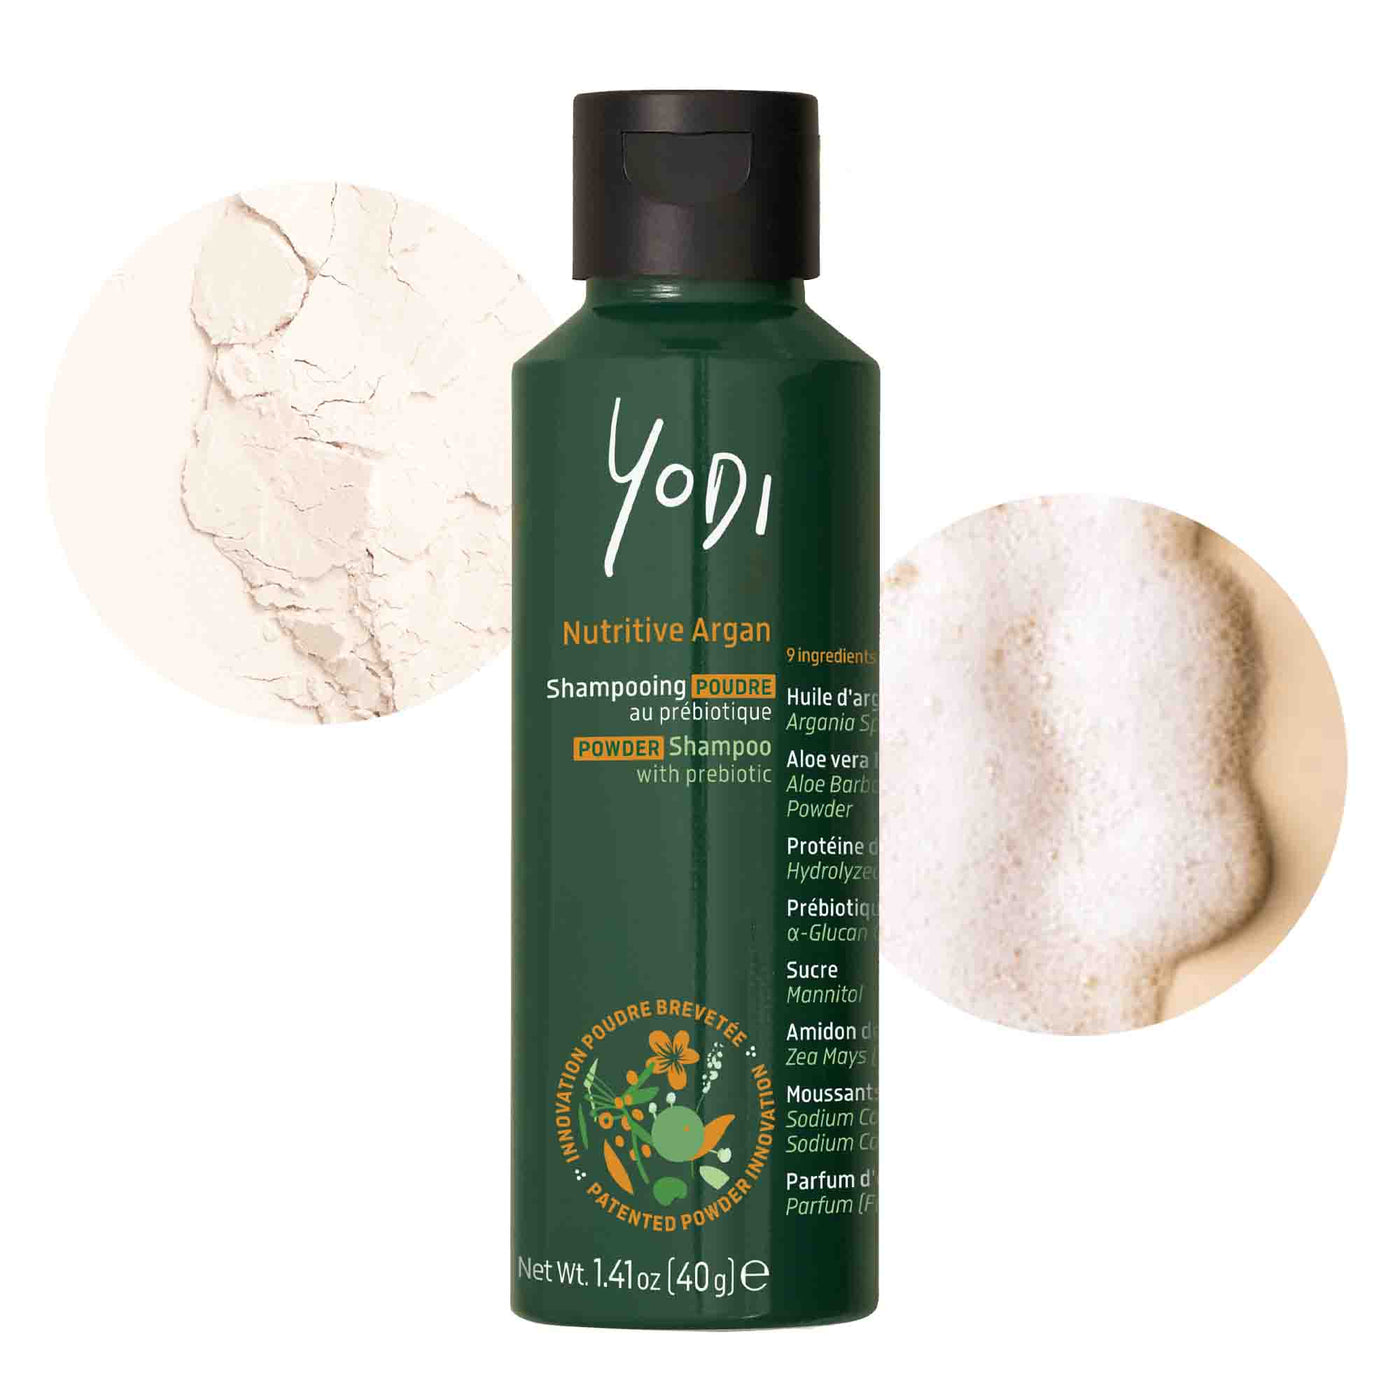 Nutritive Argan | Powder Shampoo with Prebiotic